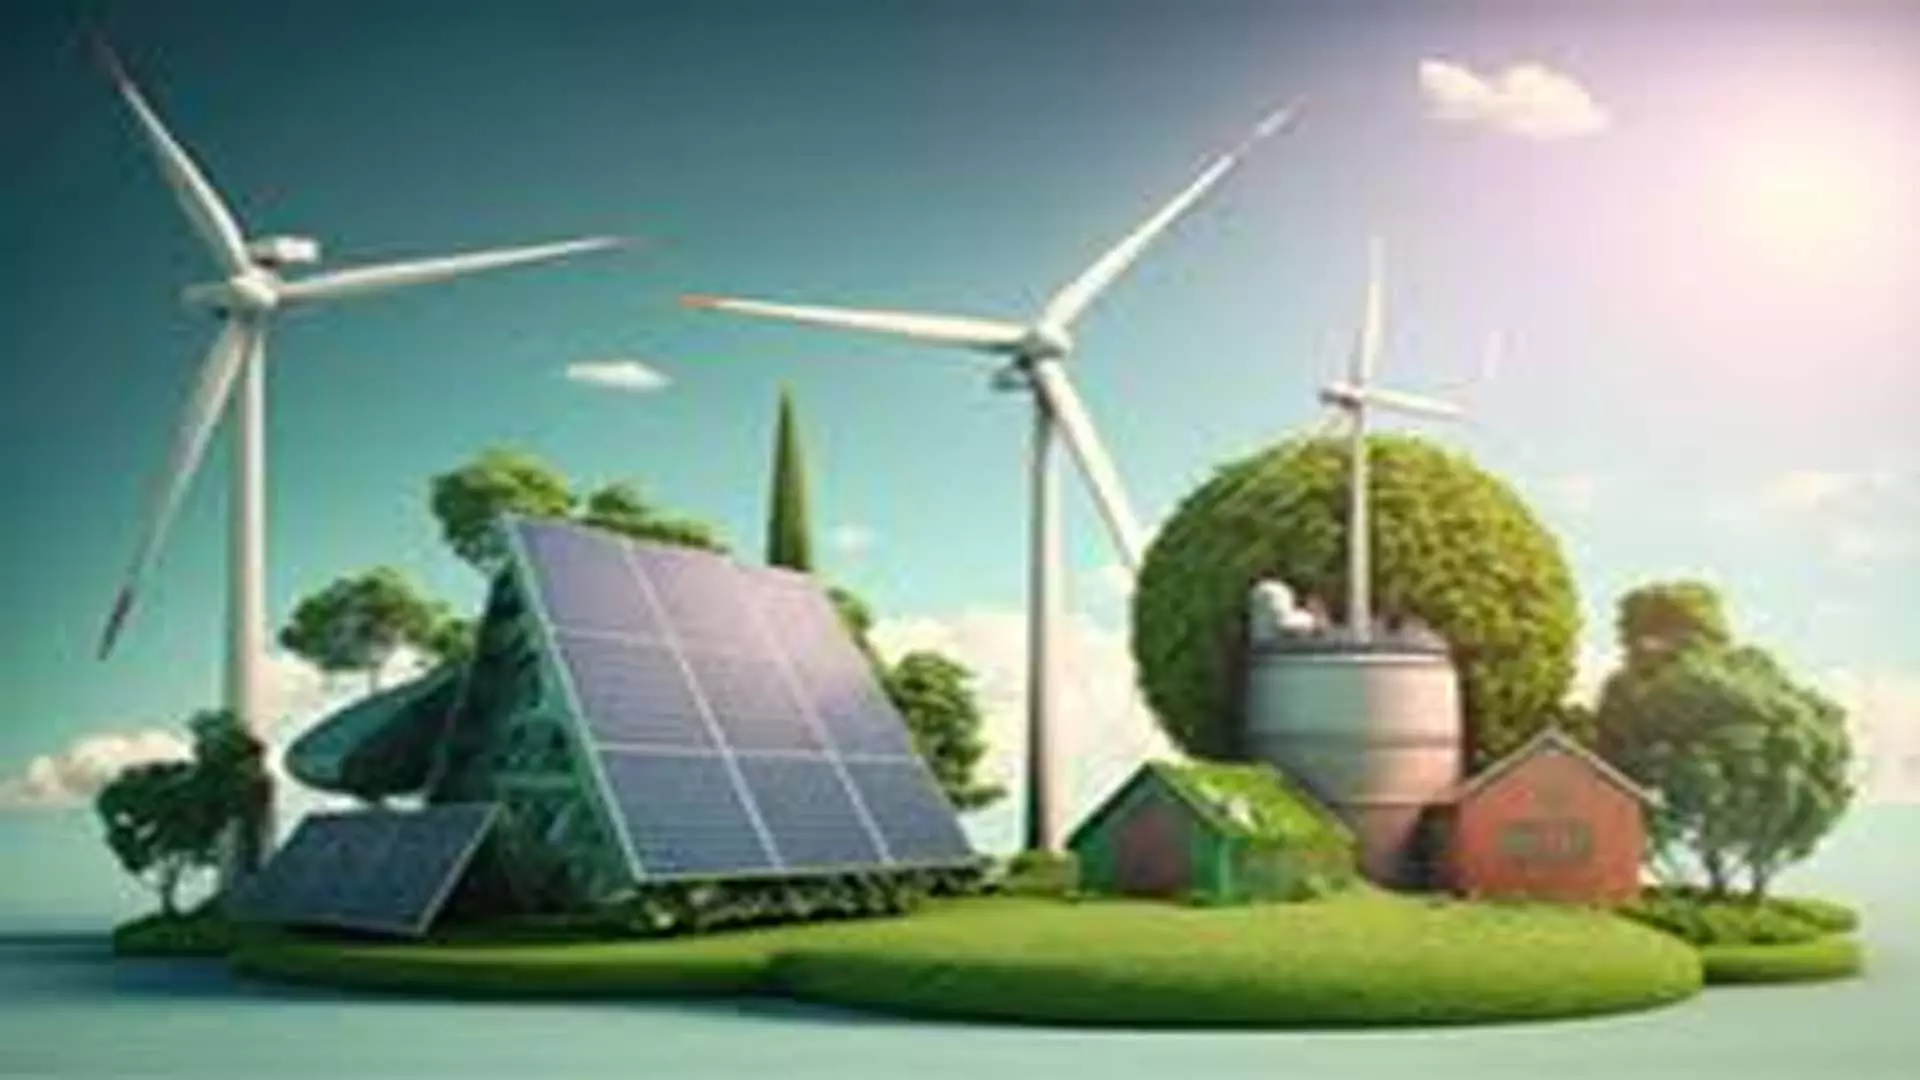 Delhi News: भारत के 500 गीगावाट नवीकरणीय ऊर्जा लक्ष्य के लिए 7 वर्षों में 215 बिलियन डॉलर निवेश की आवश्यकता होगी